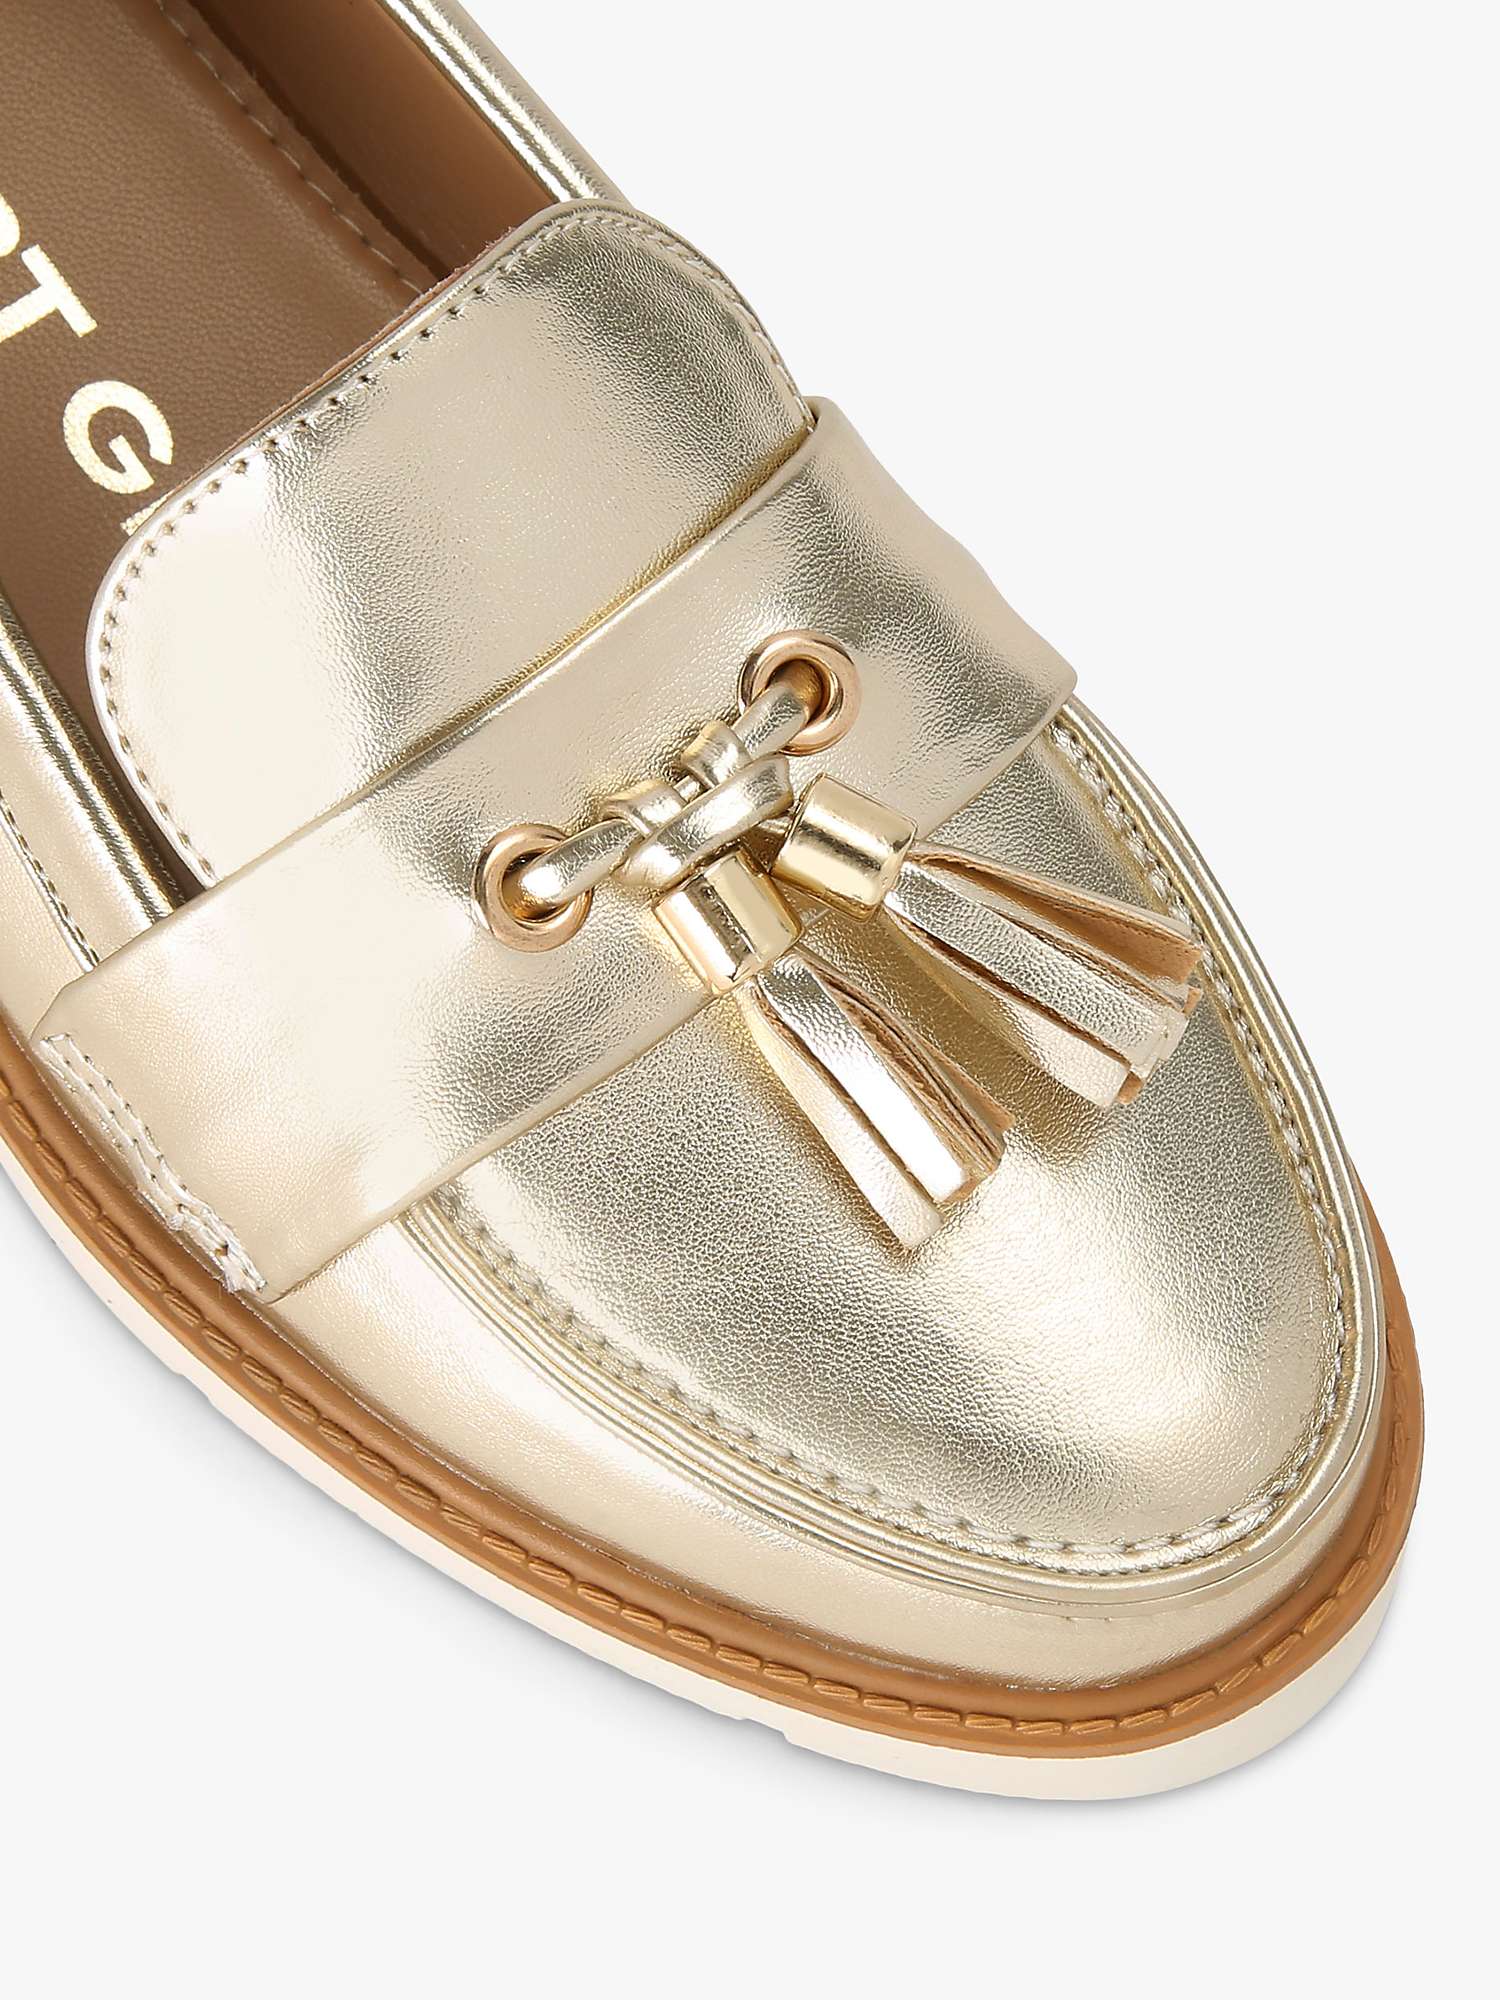 Buy KG Kurt Geiger Morly Flatform Loafers, Gold Online at johnlewis.com